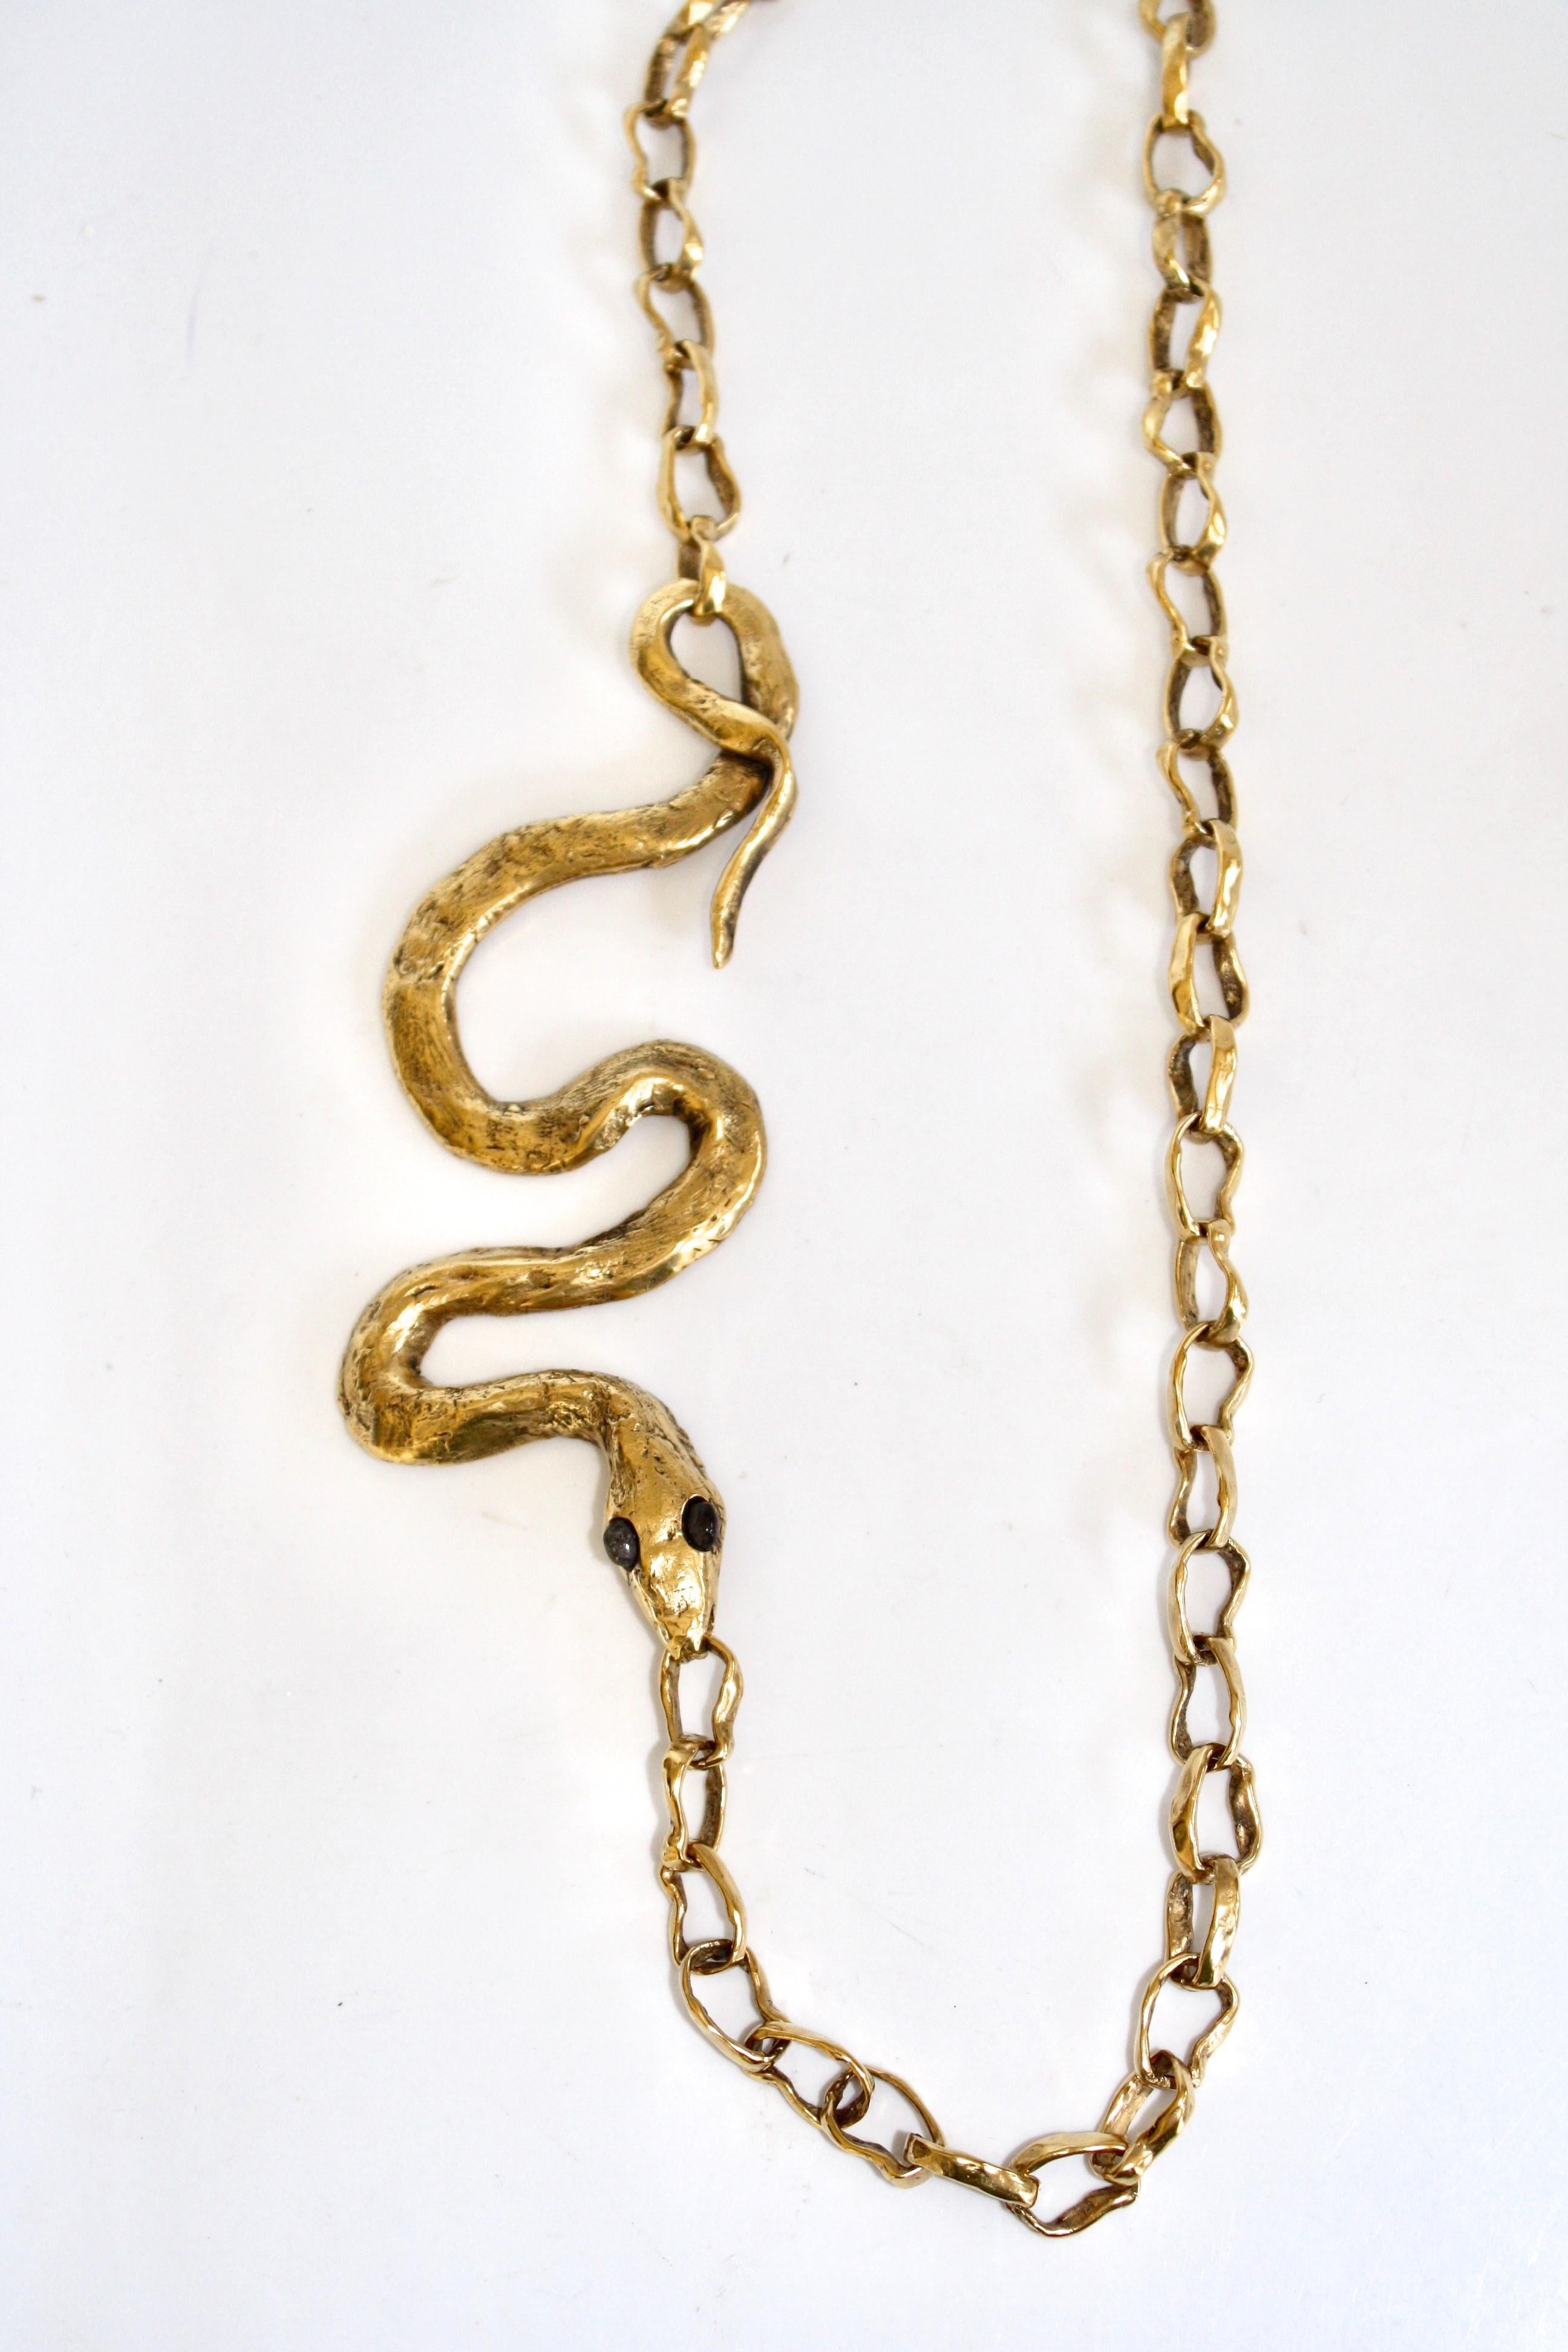 Motif de serpent sur collier en chaîne. Ce collier fait partie d'une collaboration en édition limitée entre Harumi Klossowska de Rola et la maison Goossens Paris. La chaîne fait 28